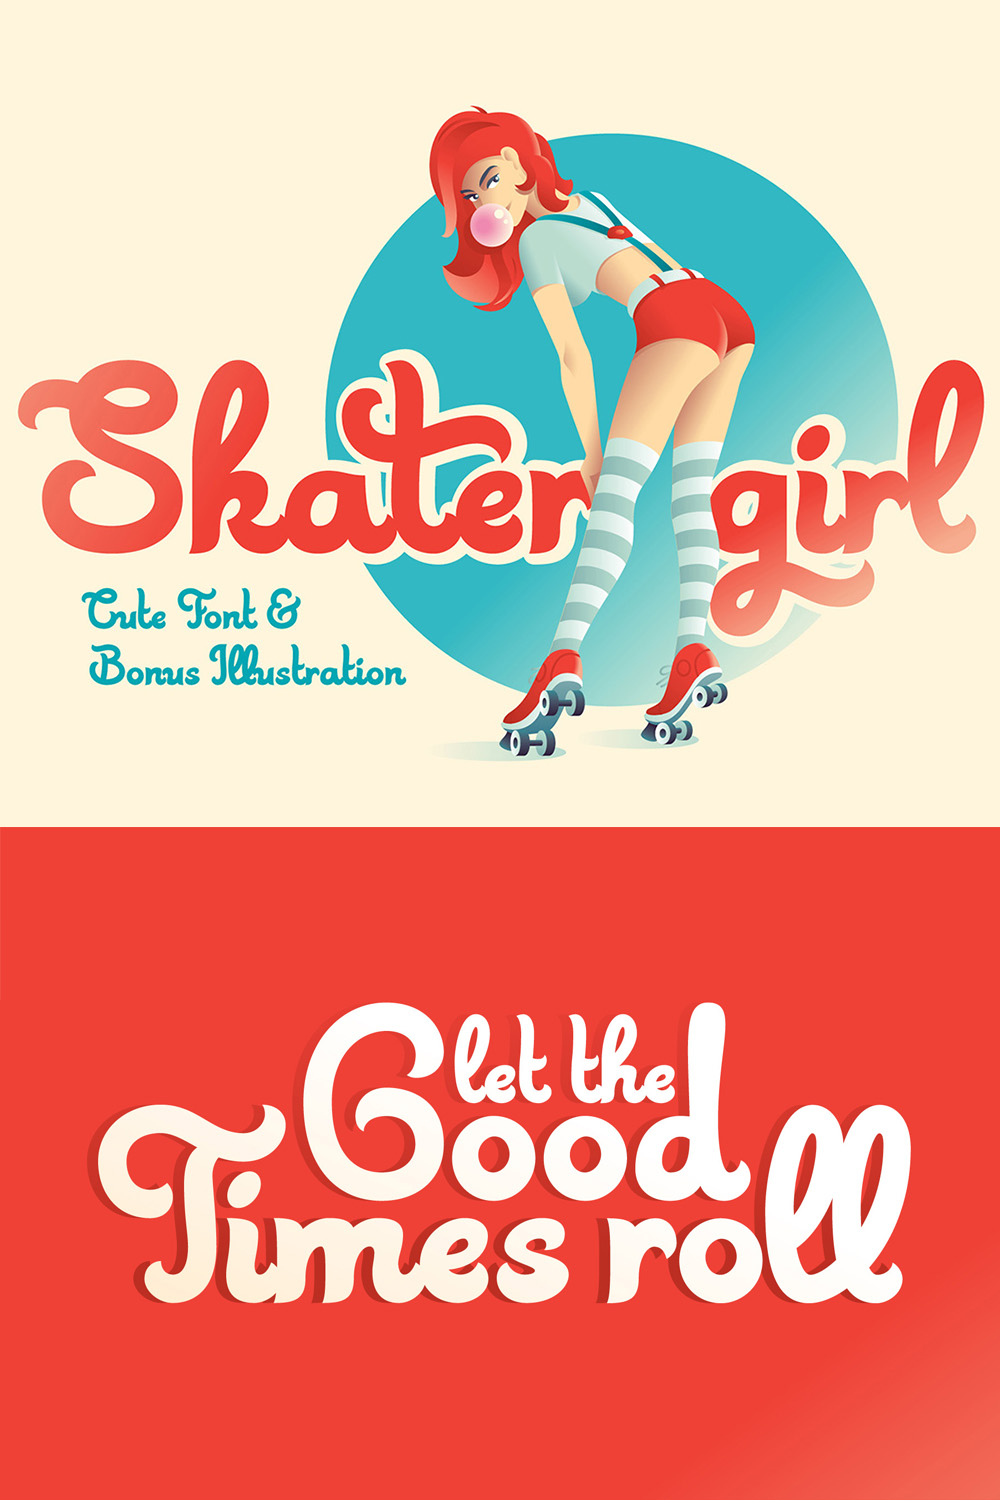 Skater Girl Script font pinterest image.